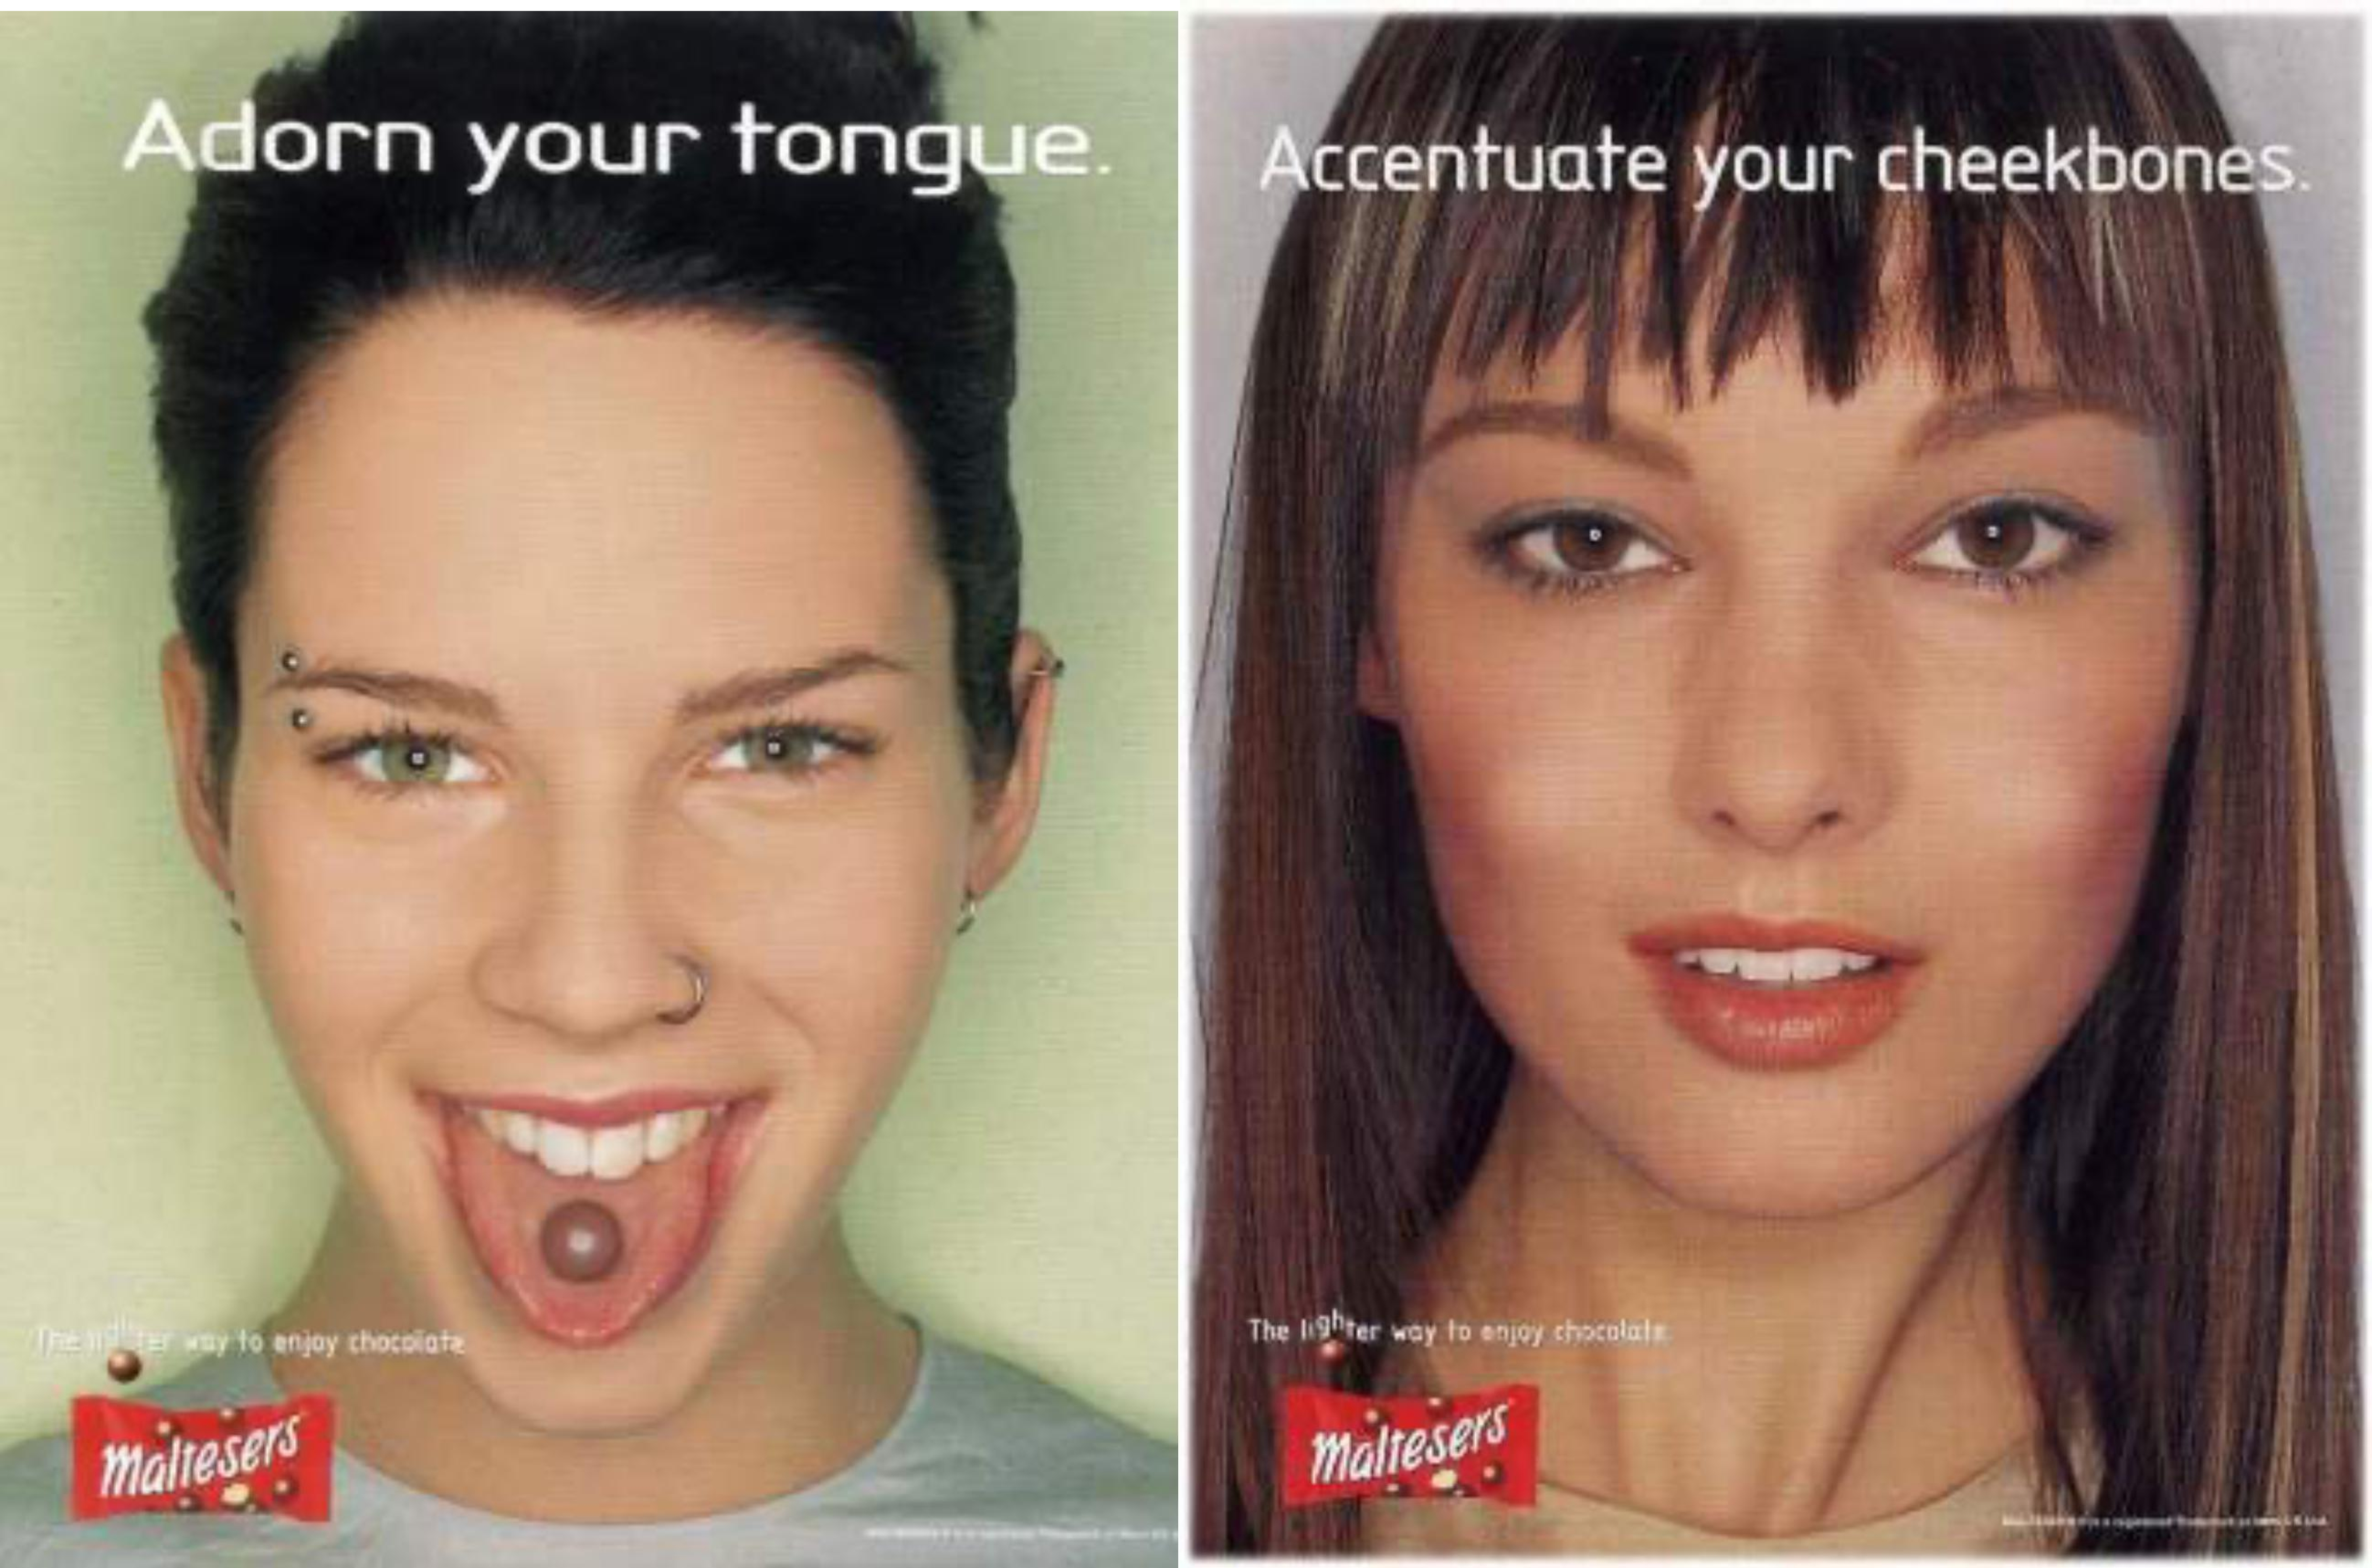 Publicité Maltesers des années 1990 montrant des gros plans des visages de deux femmes